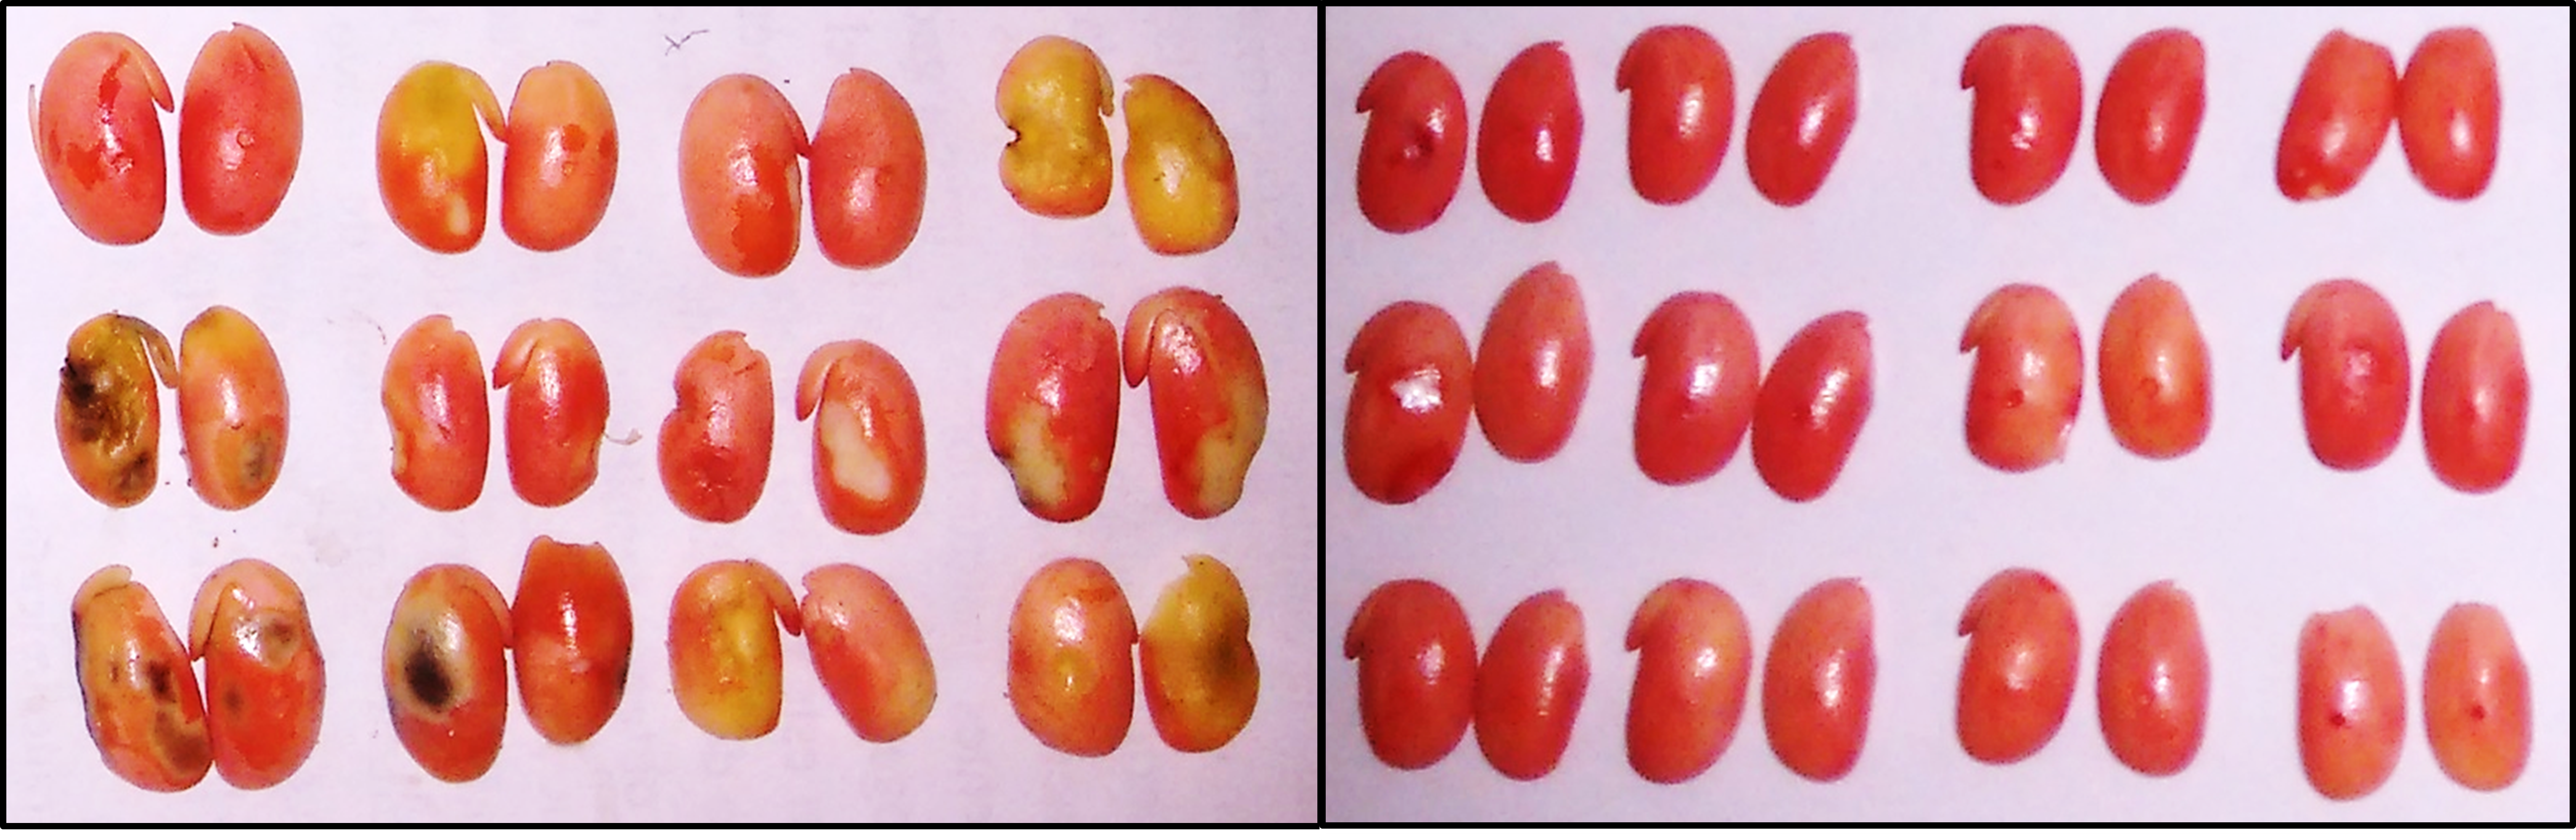 Teste de Tetrazólio: grãos de parcela sem aplicação de inseticida (esquerda) e com aplicação de inseticida (direita). - Foto: Clérison Perini